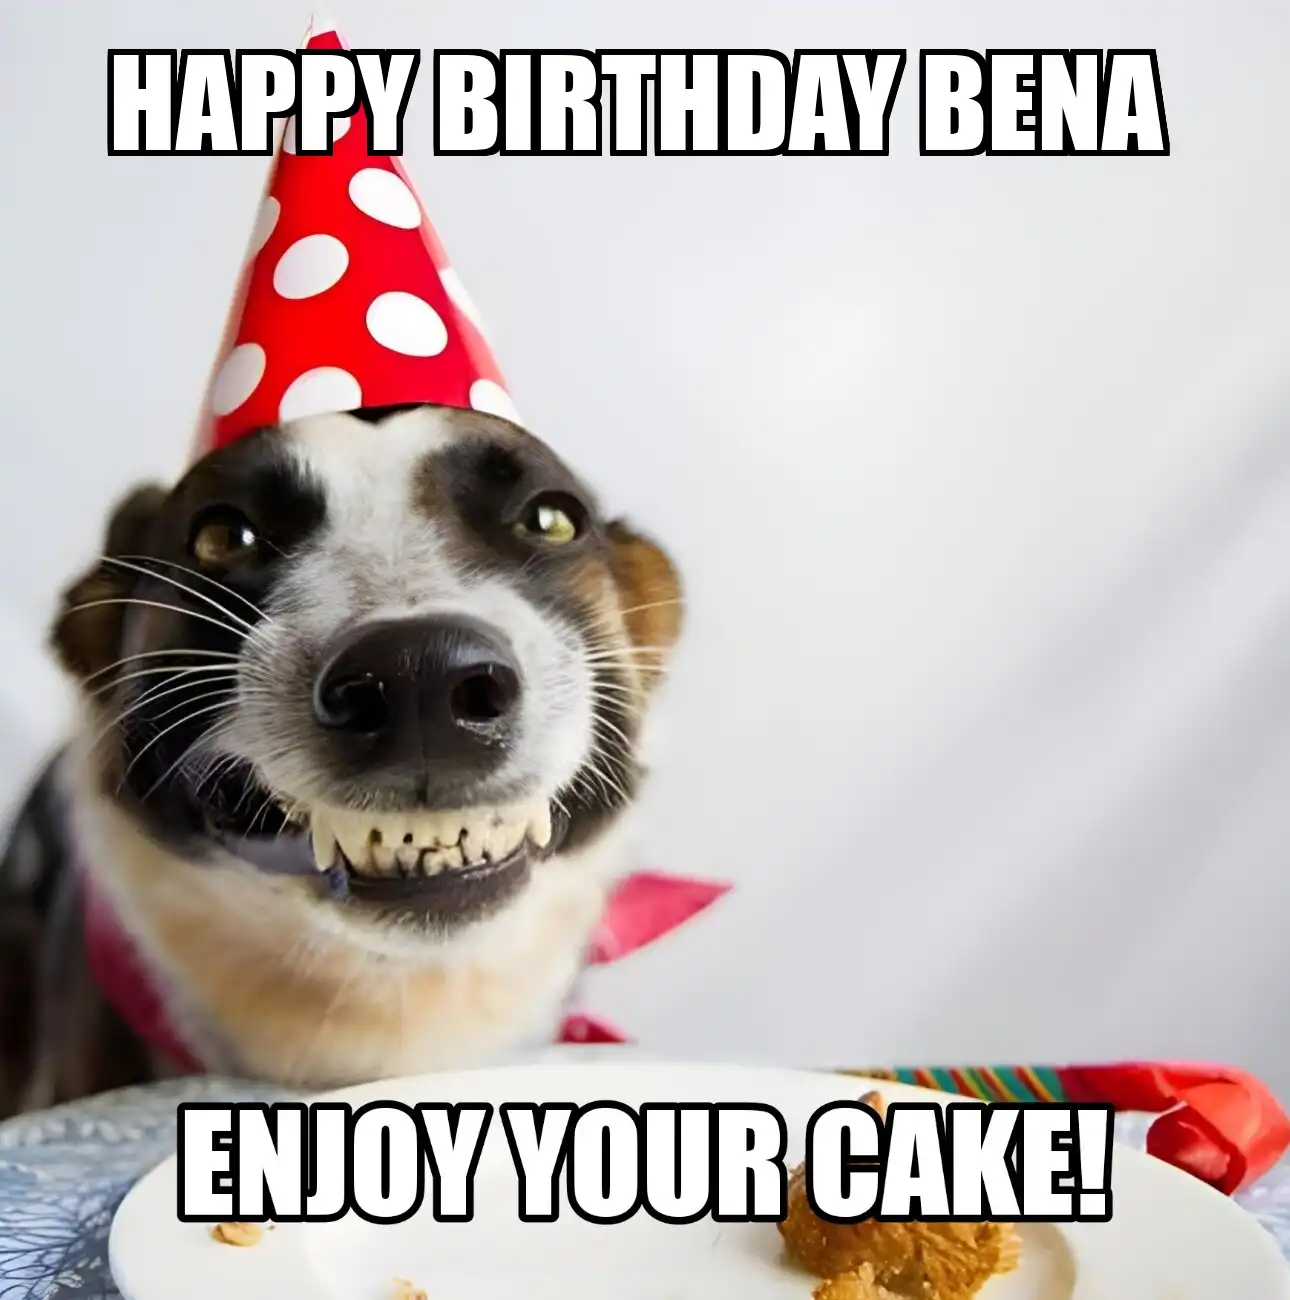 Happy Birthday Bena Enjoy Your Cake Dog Meme